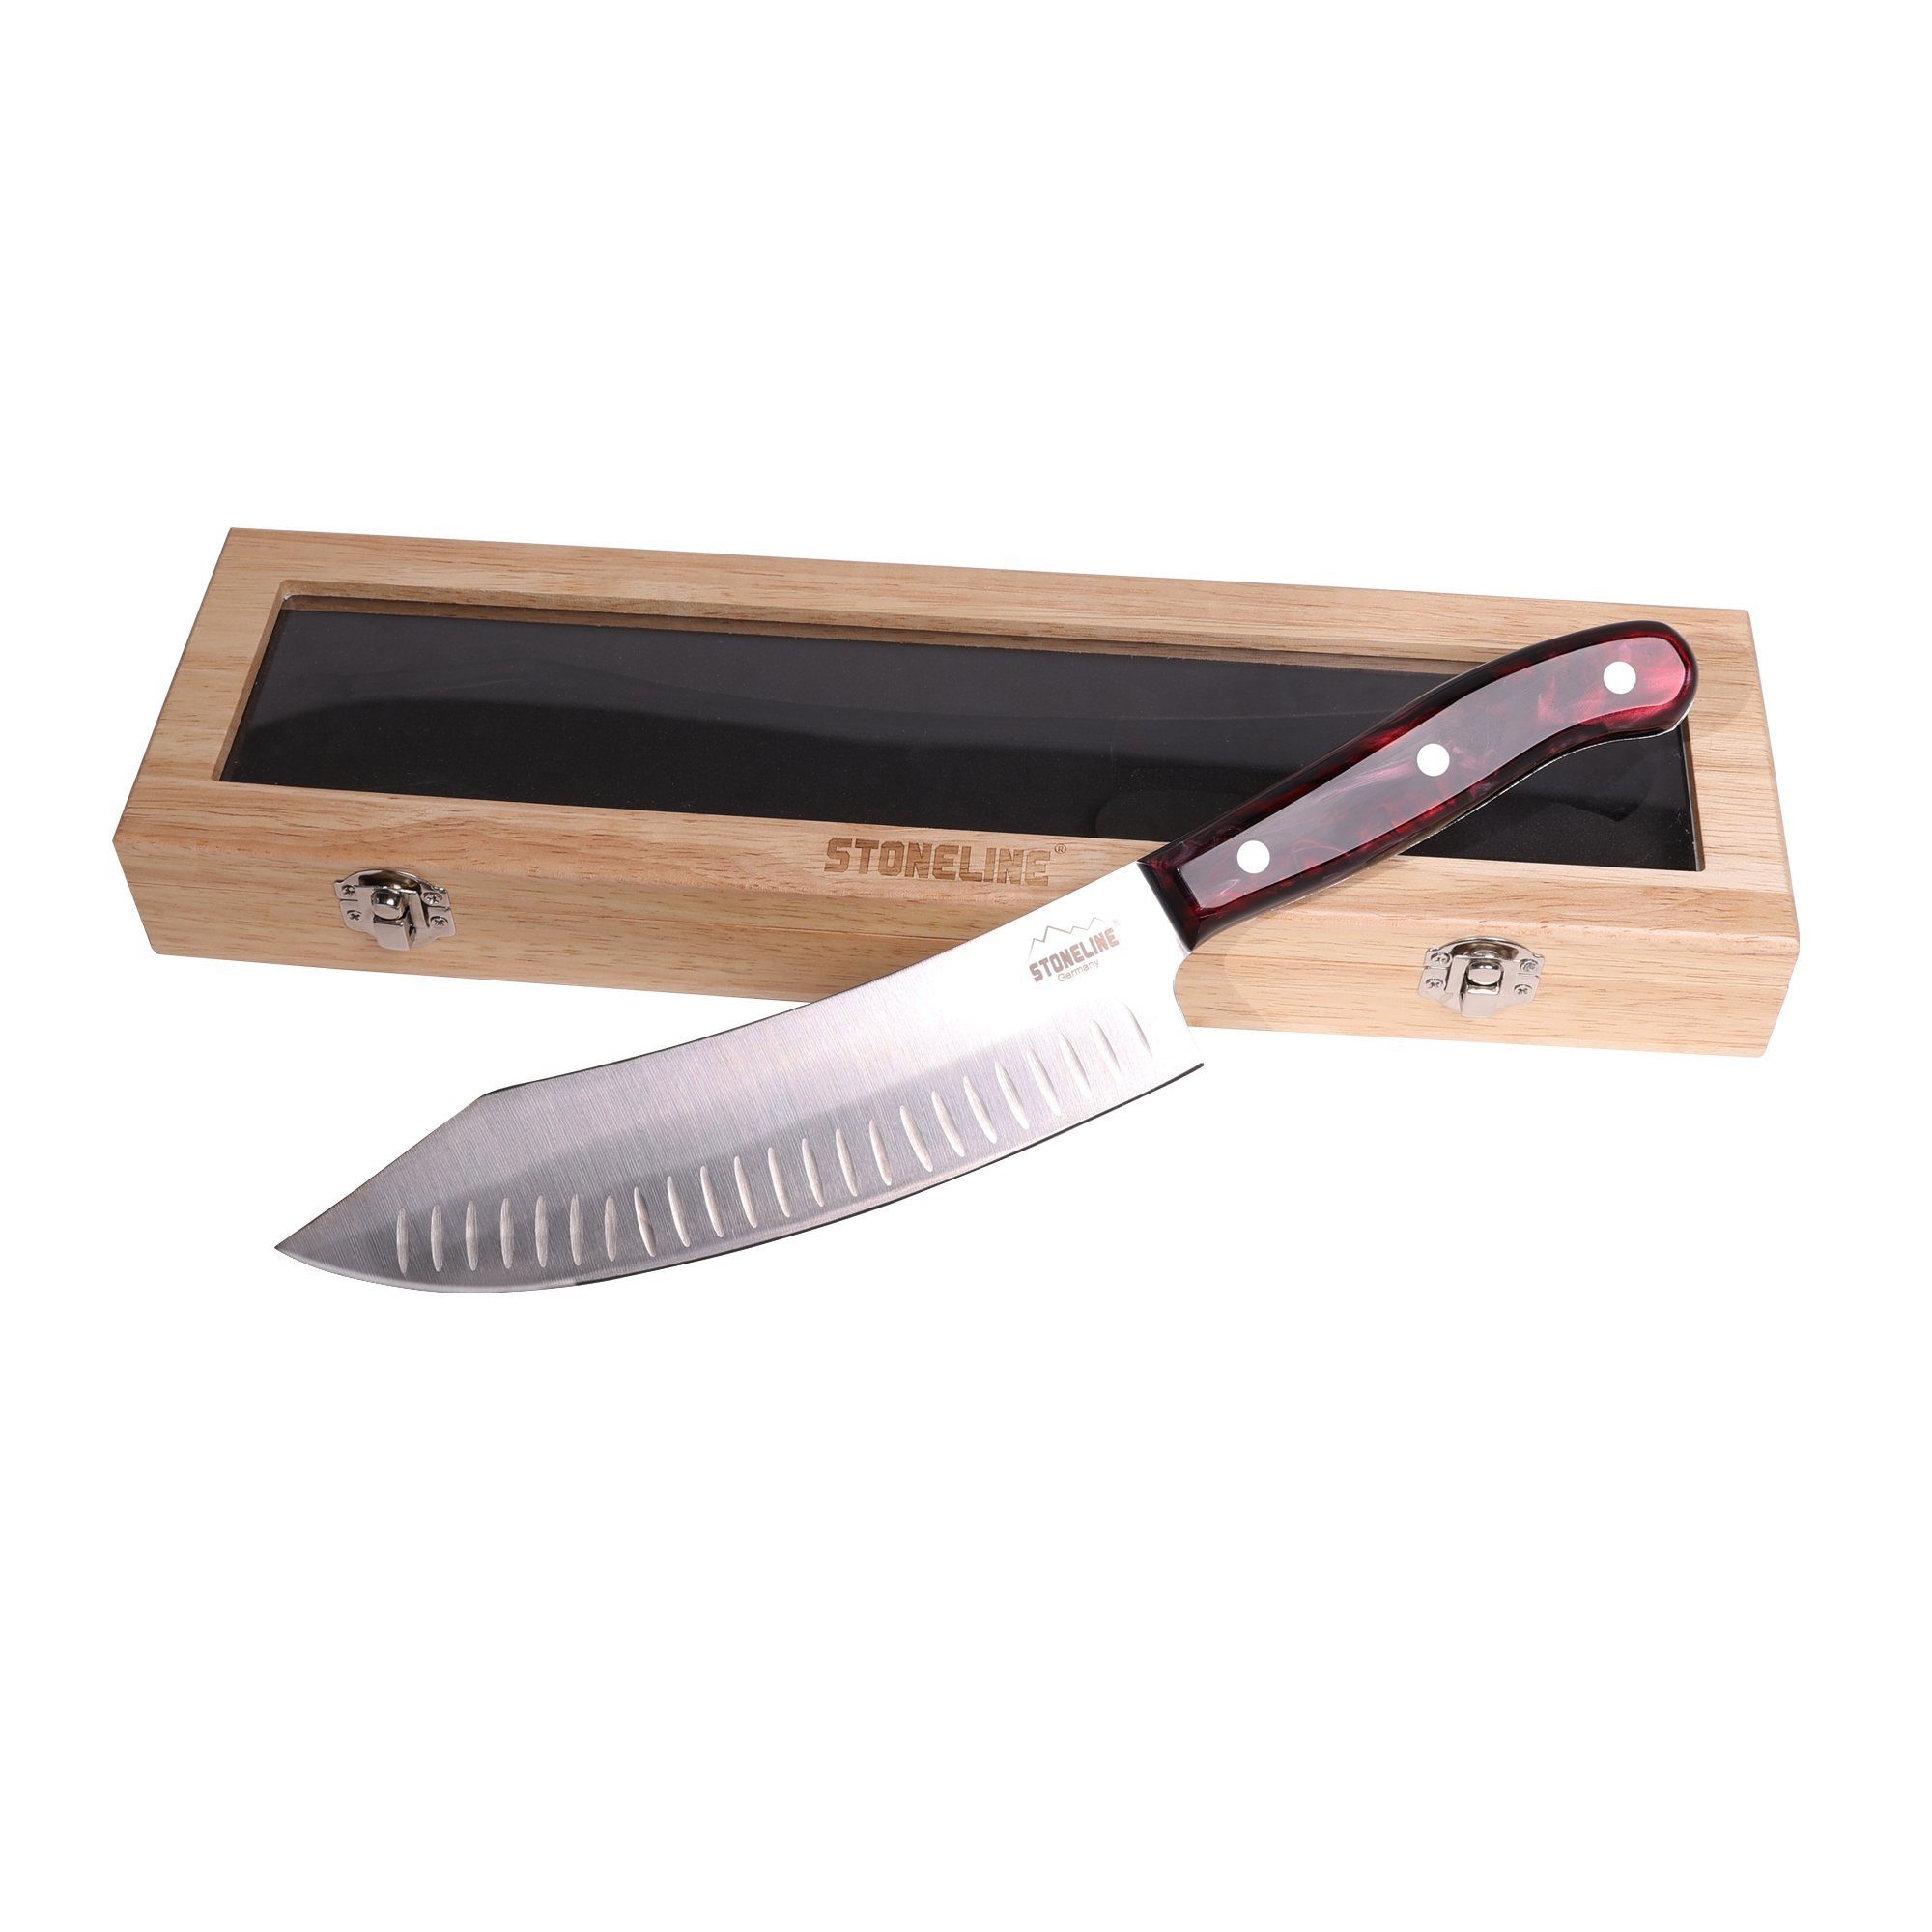 STONELINE Messer-Set Chefmesser 33,2 cm, in edler Aufbewahrungsbox aus Holz